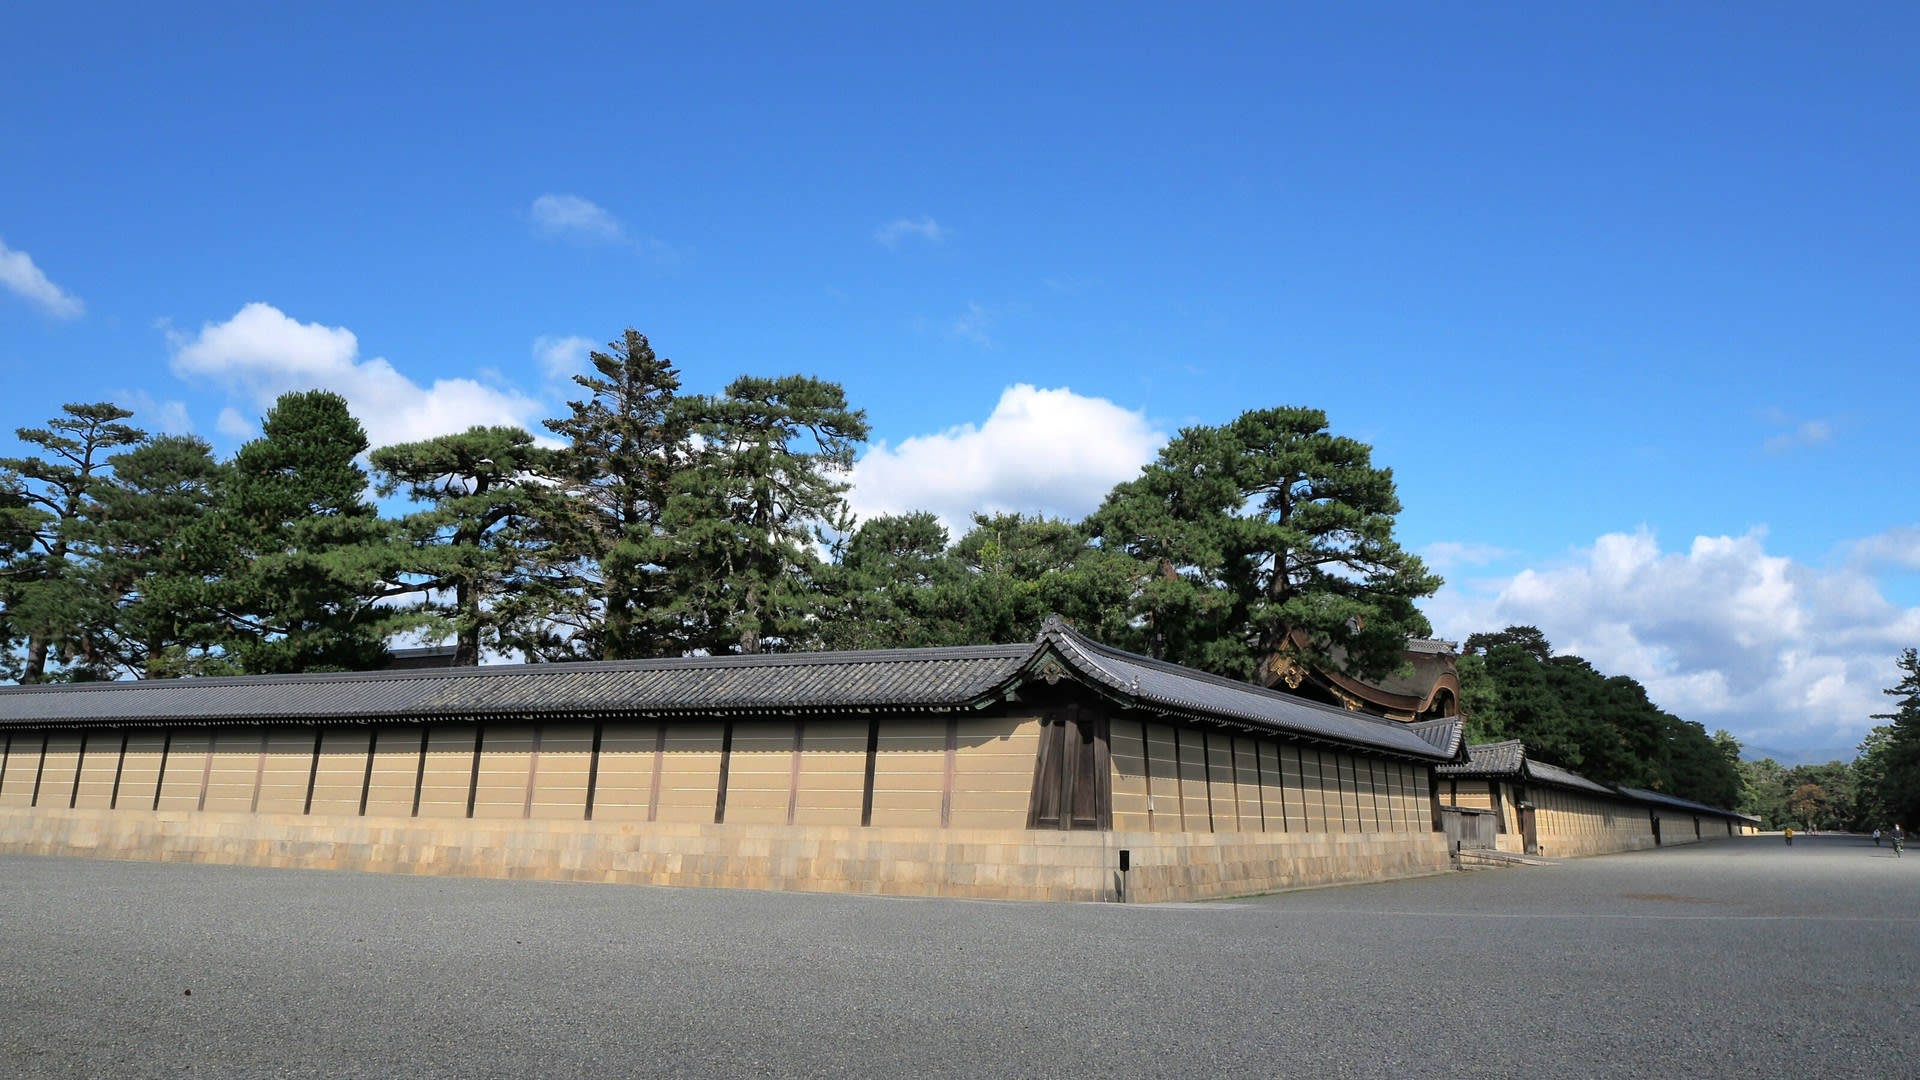 拝観 京都 御所 無料でいつでも観覧出来る京都御所の紹介・無料ガイドツアーも有ります